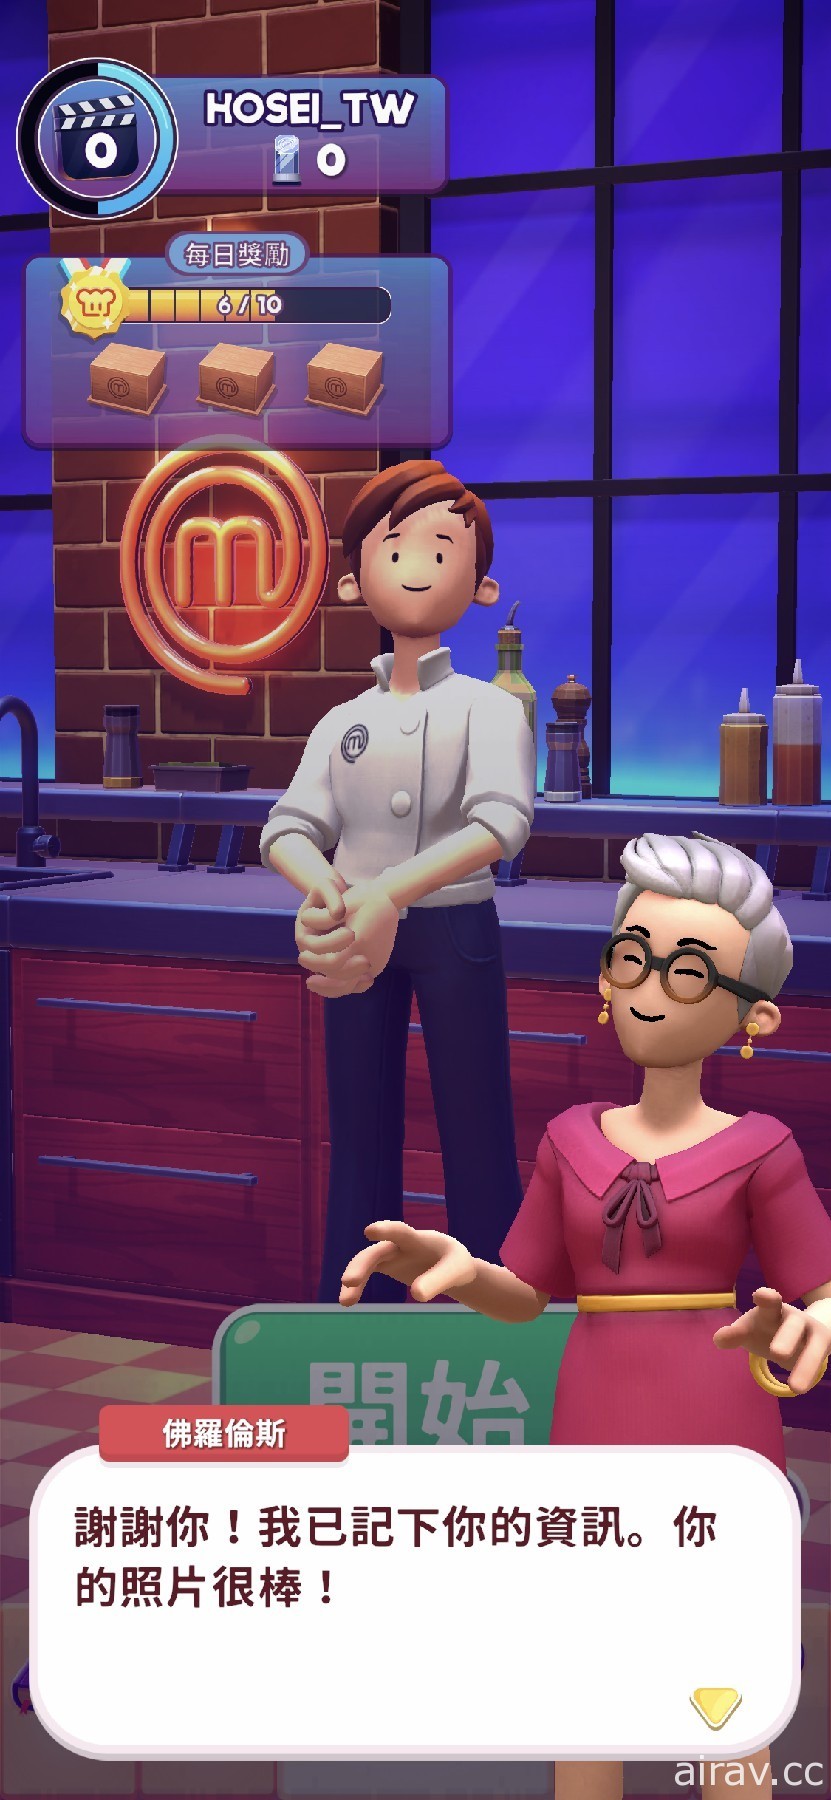 趣味烹飪競賽遊戲《MasterChef: Let』s Cook》於 Apple Arcade 推出 展現廚藝的時刻到了